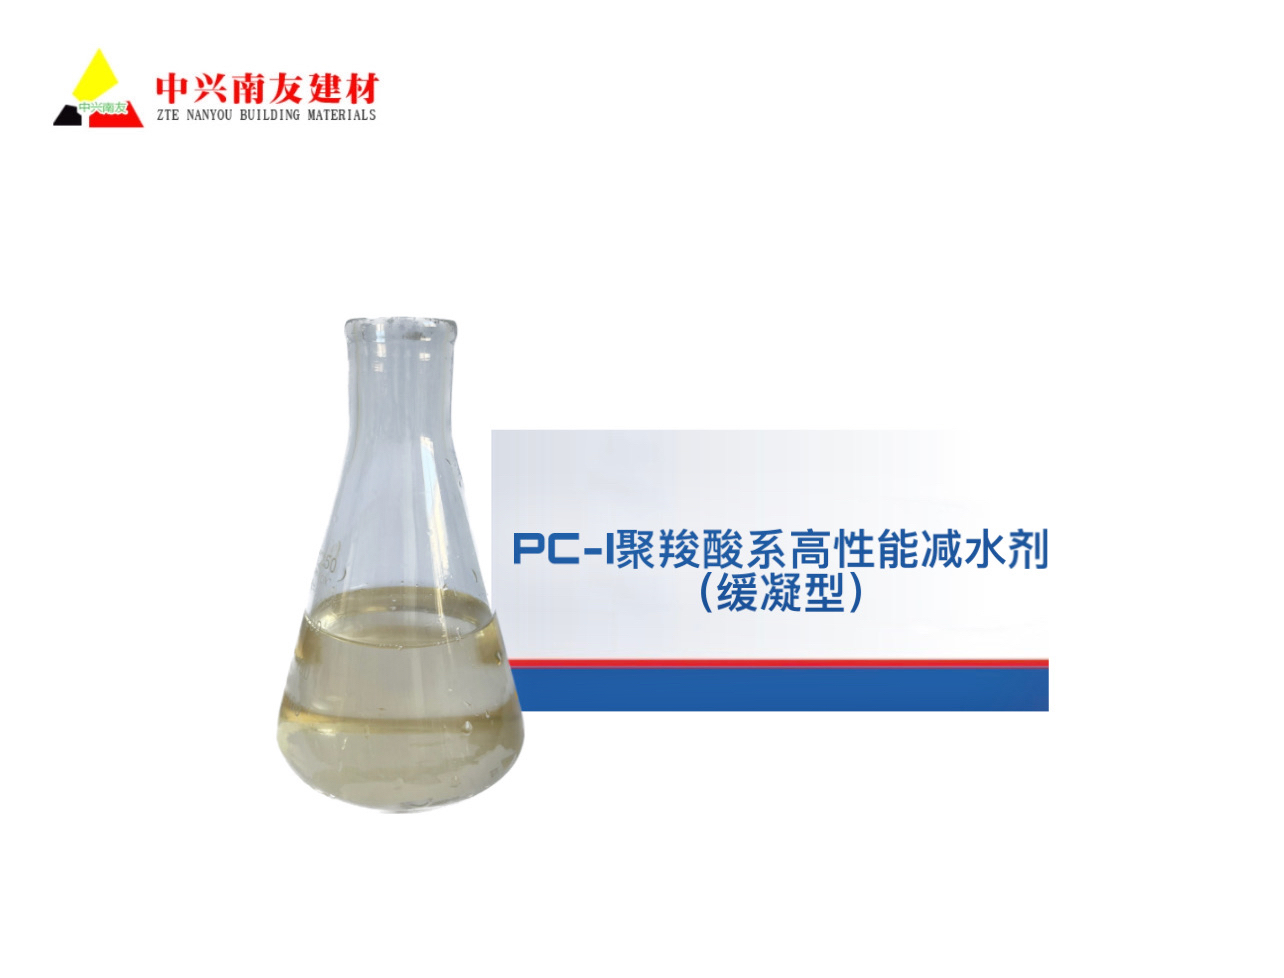 贵州 PC-I聚羧酸系高性能减水剂（缓凝型）